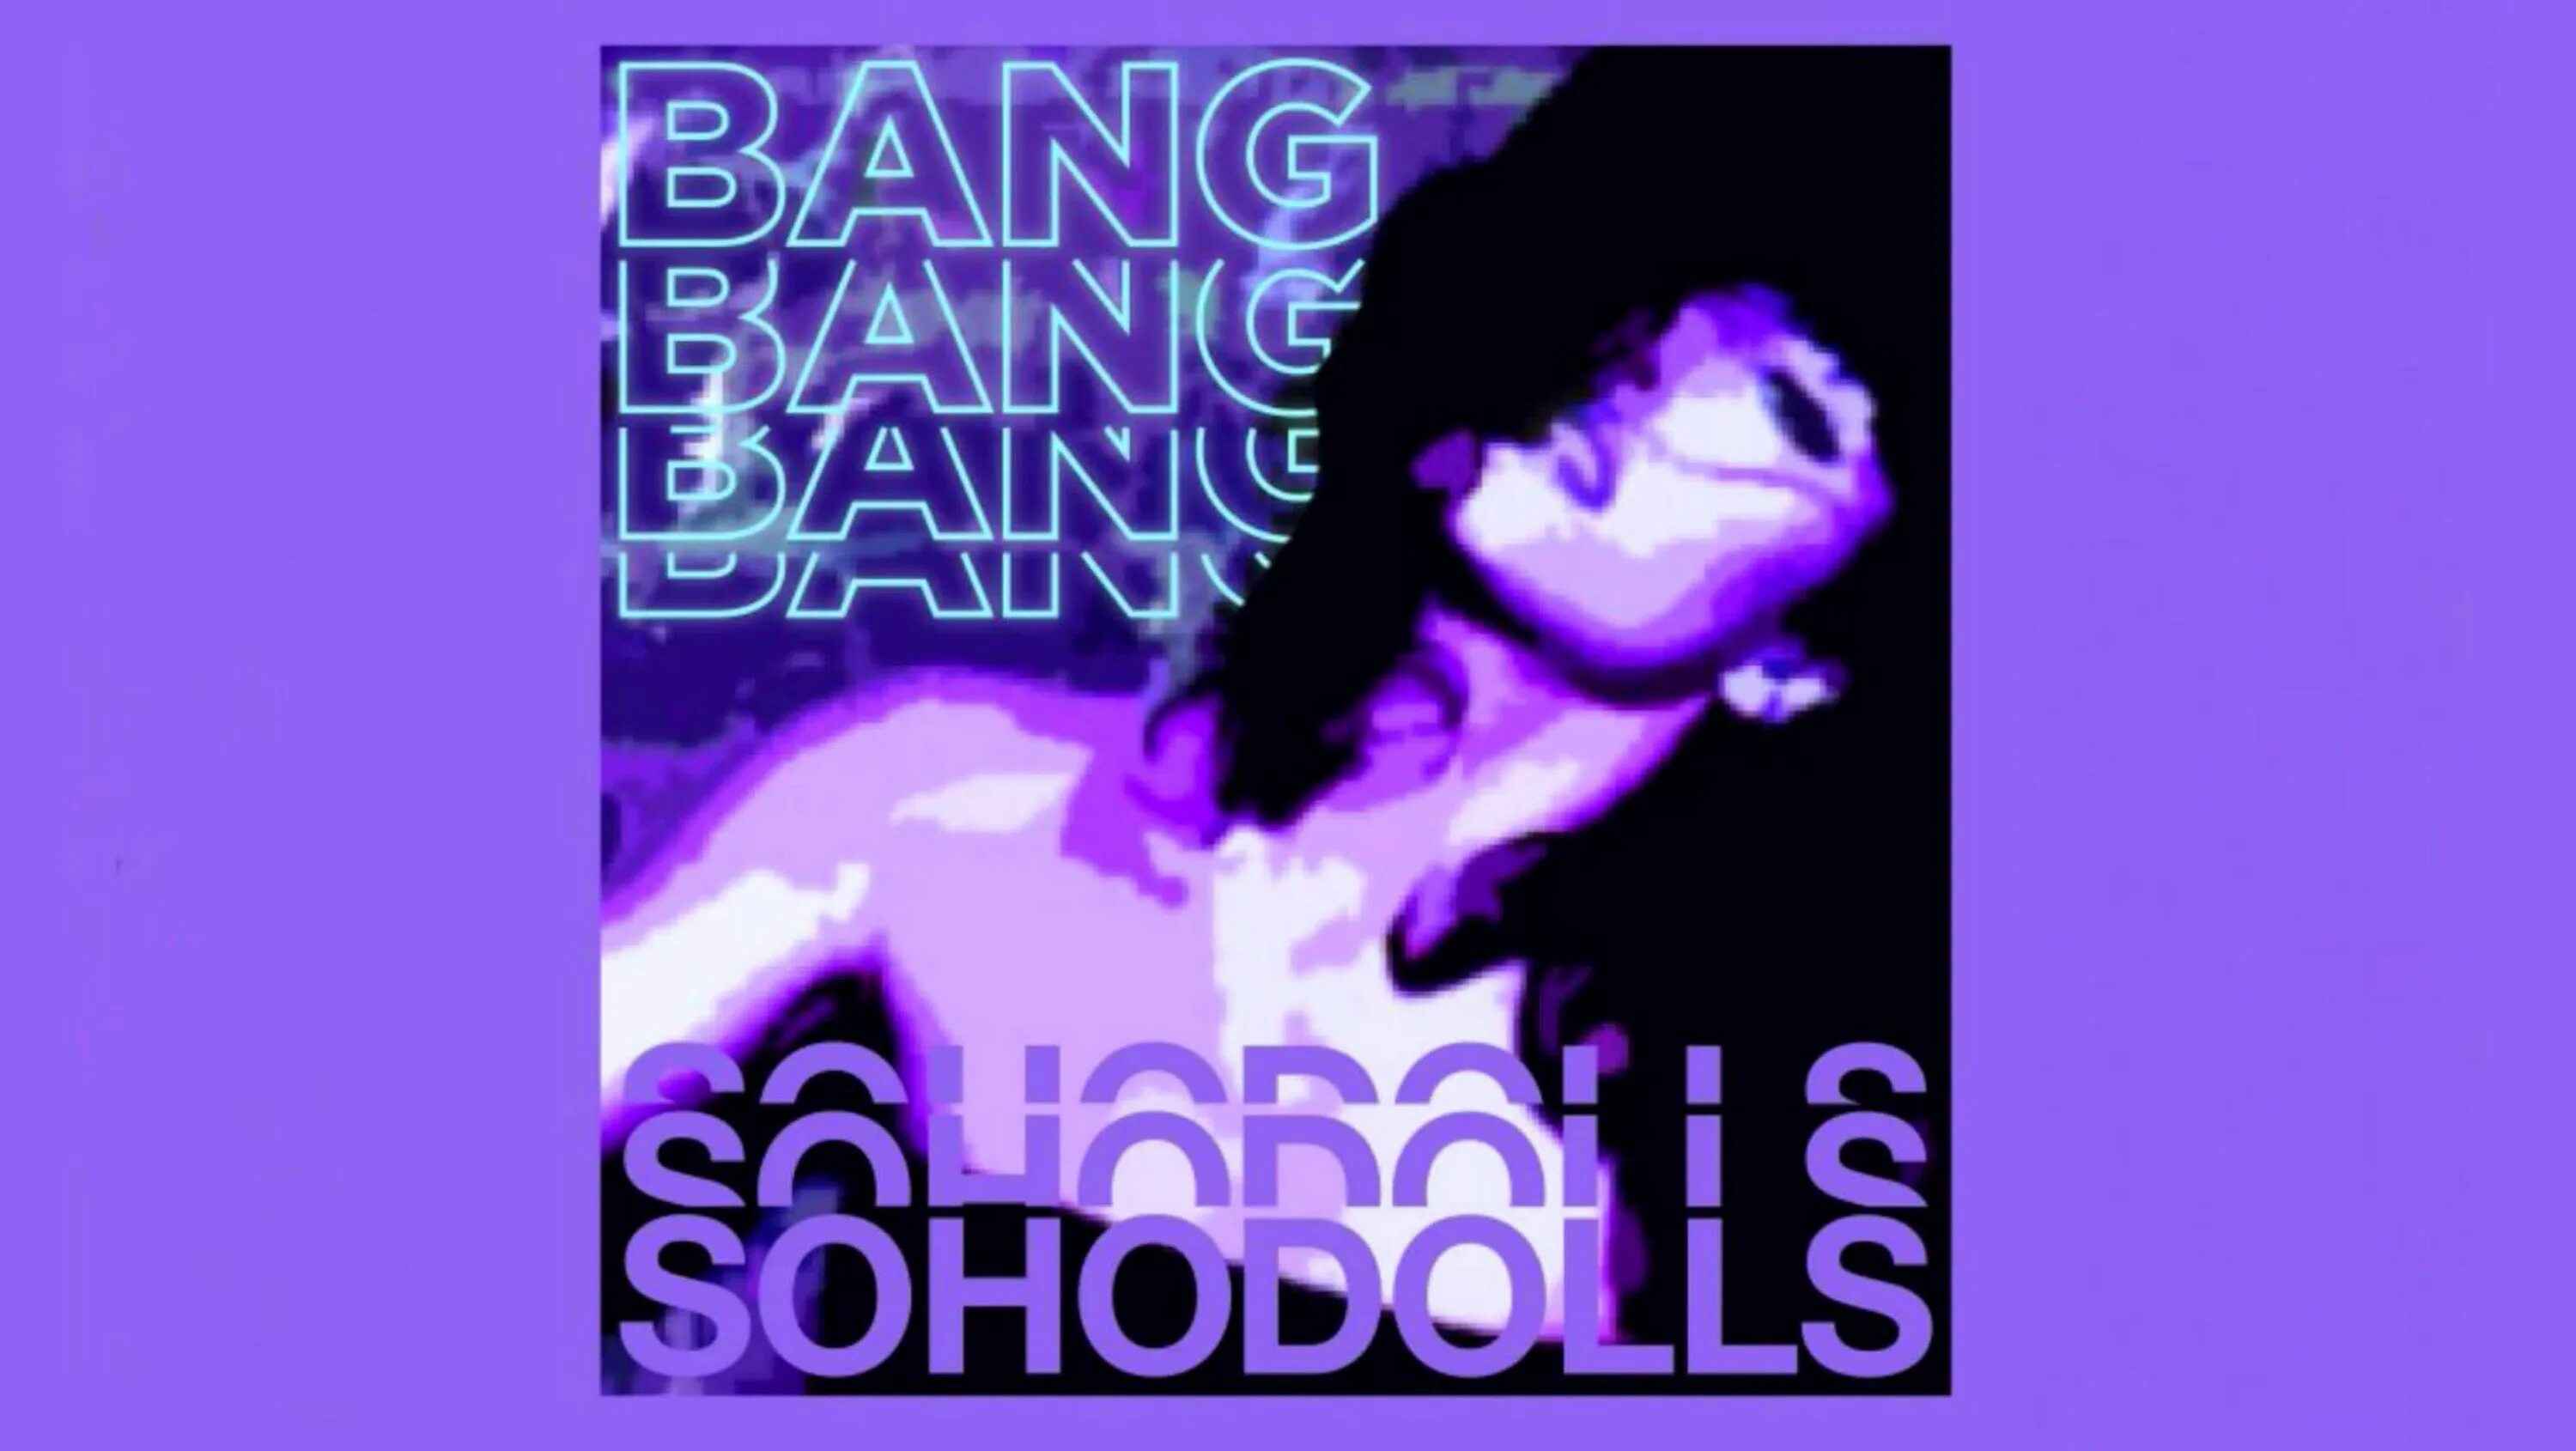 Жесткий bang bang. Bang Bang Bang Sohodolls обложка. Песня Bang Bang Bang. Bang Bang Bang Bang Sohodolls песни. Песня Bang Bang Speed up.